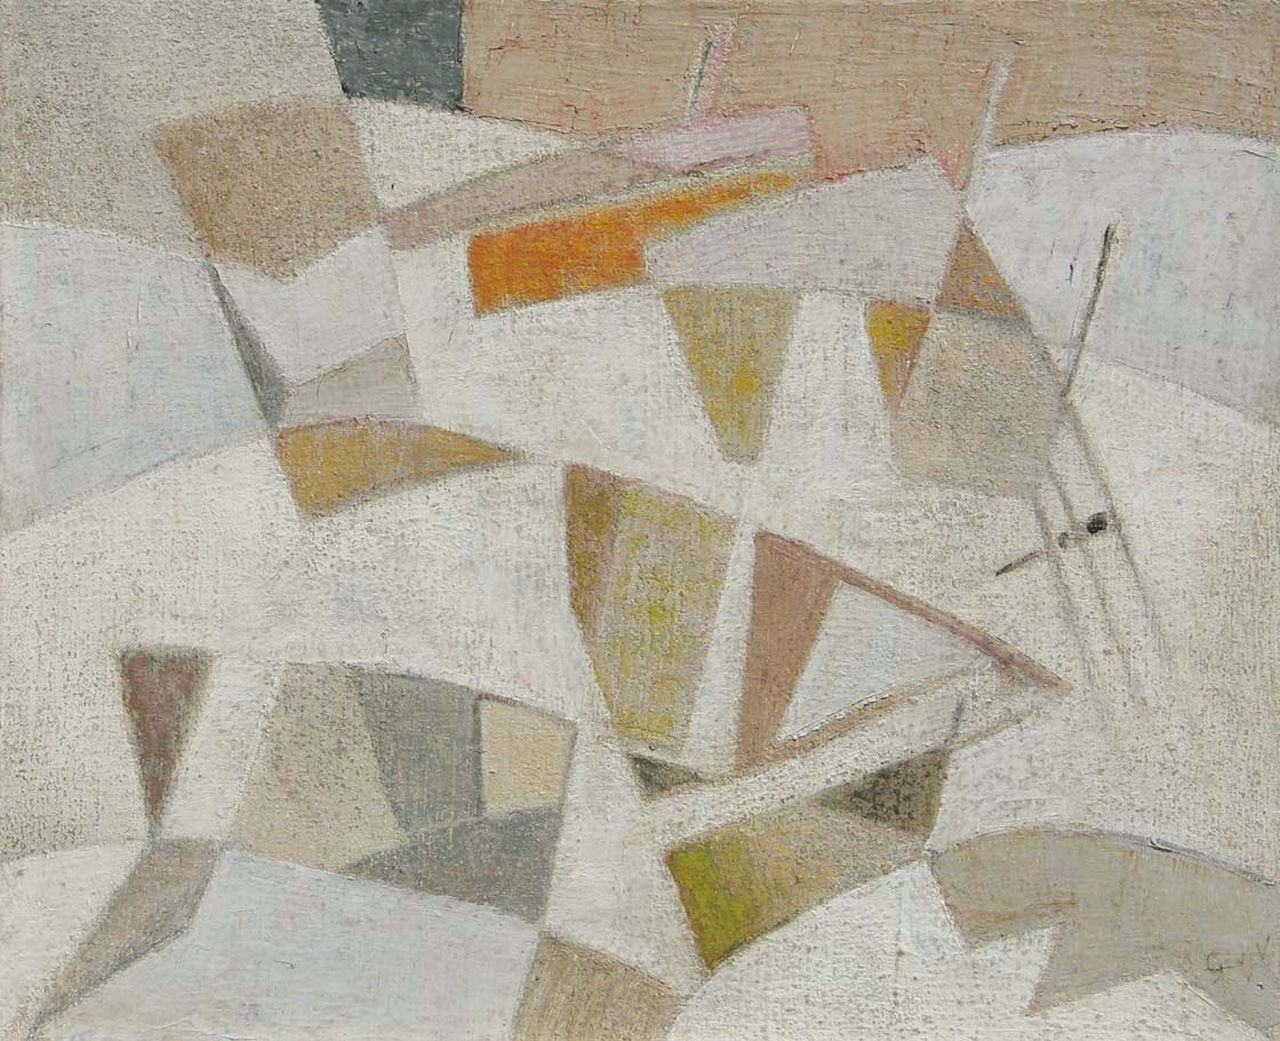 Velde G. van | Gerardus 'Geer' van Velde, Compositie, olieverf op doek 38,0 x 46,0 cm, gesigneerd rechtsonder met initialen